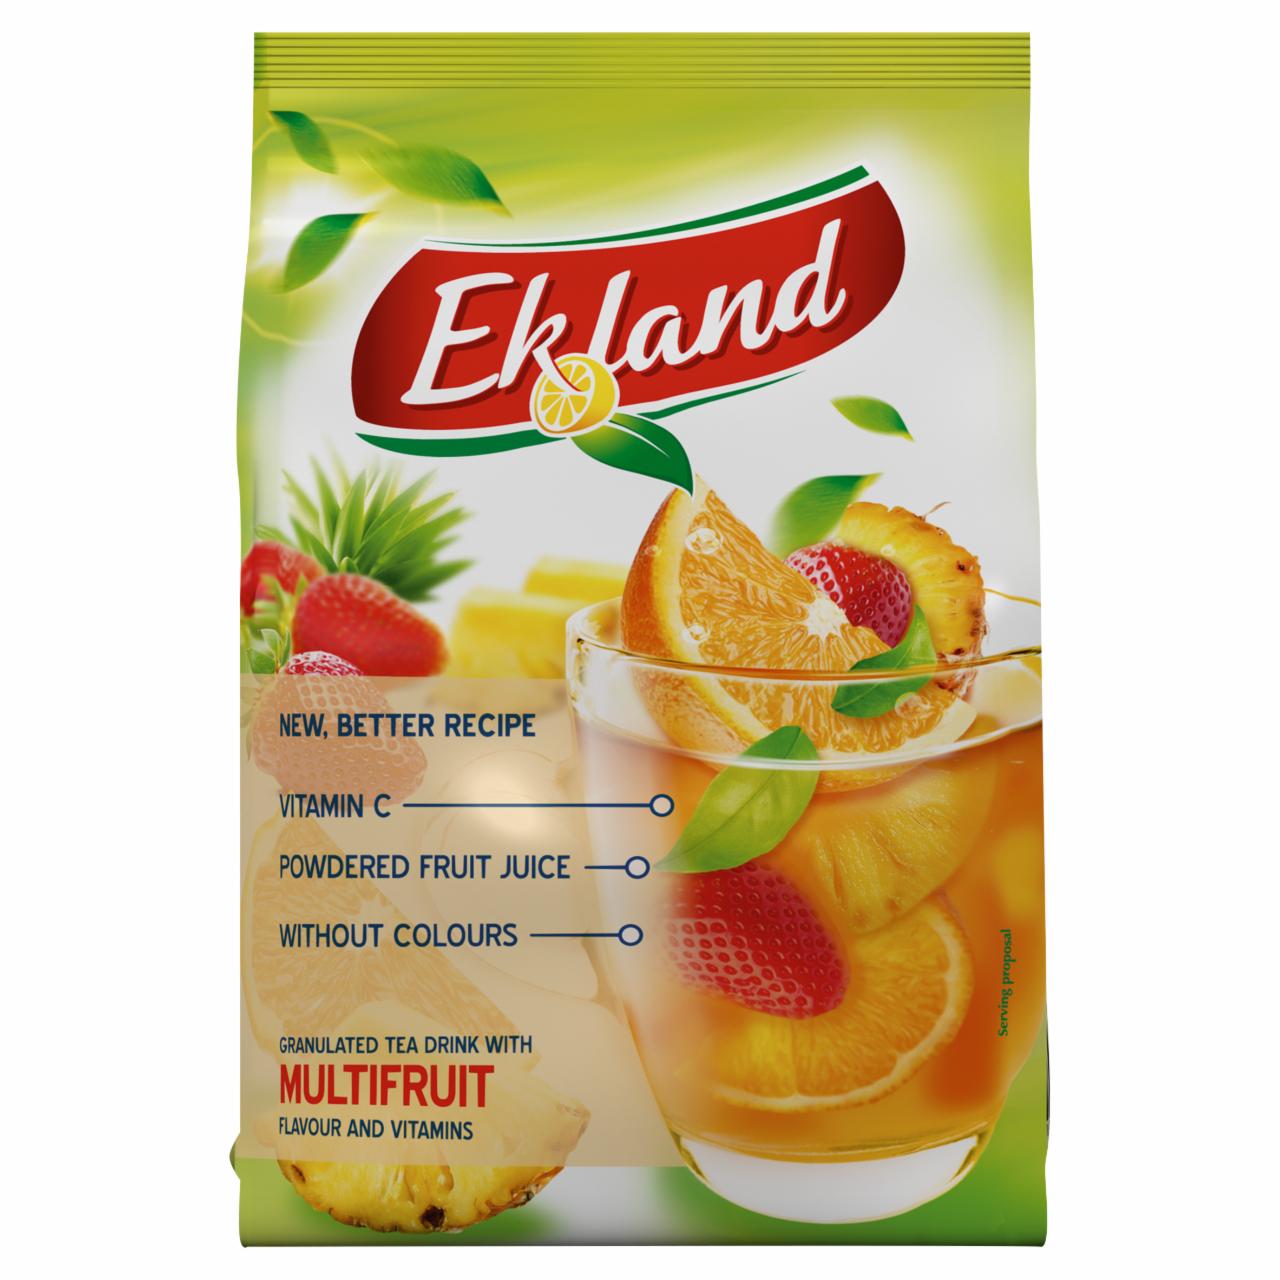 Képek - Ekland azonnal oldódó vegyesgyümölcs ízű tea üdítőitalpor vitaminokkal 300 g